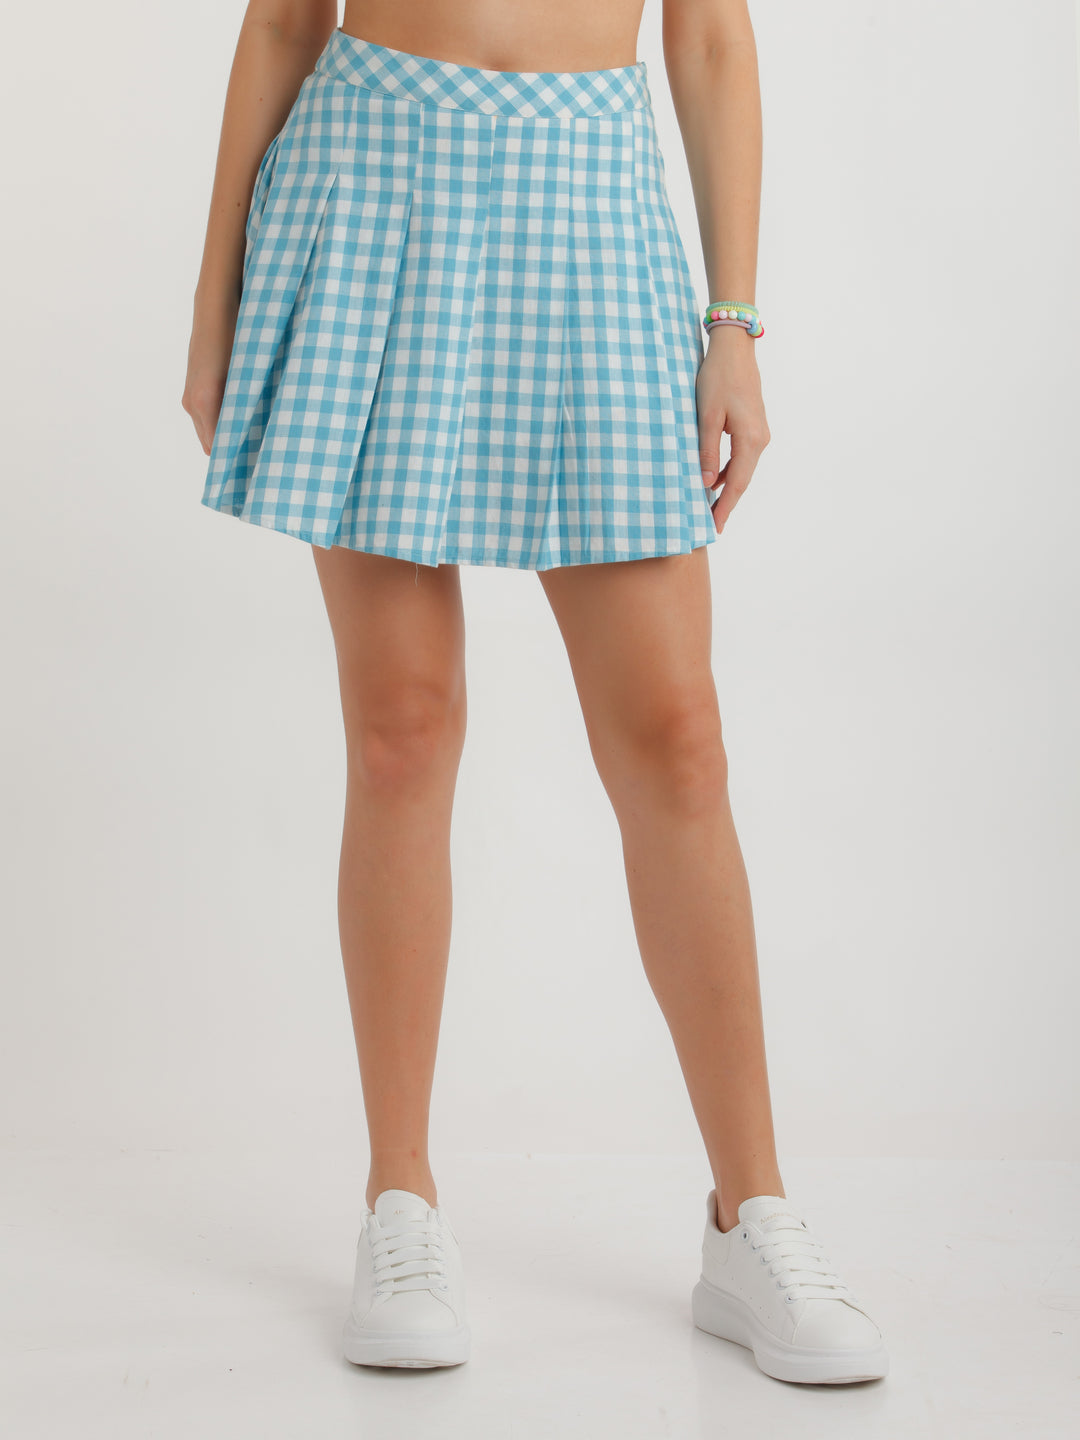 Blue Checked Skirt For Women